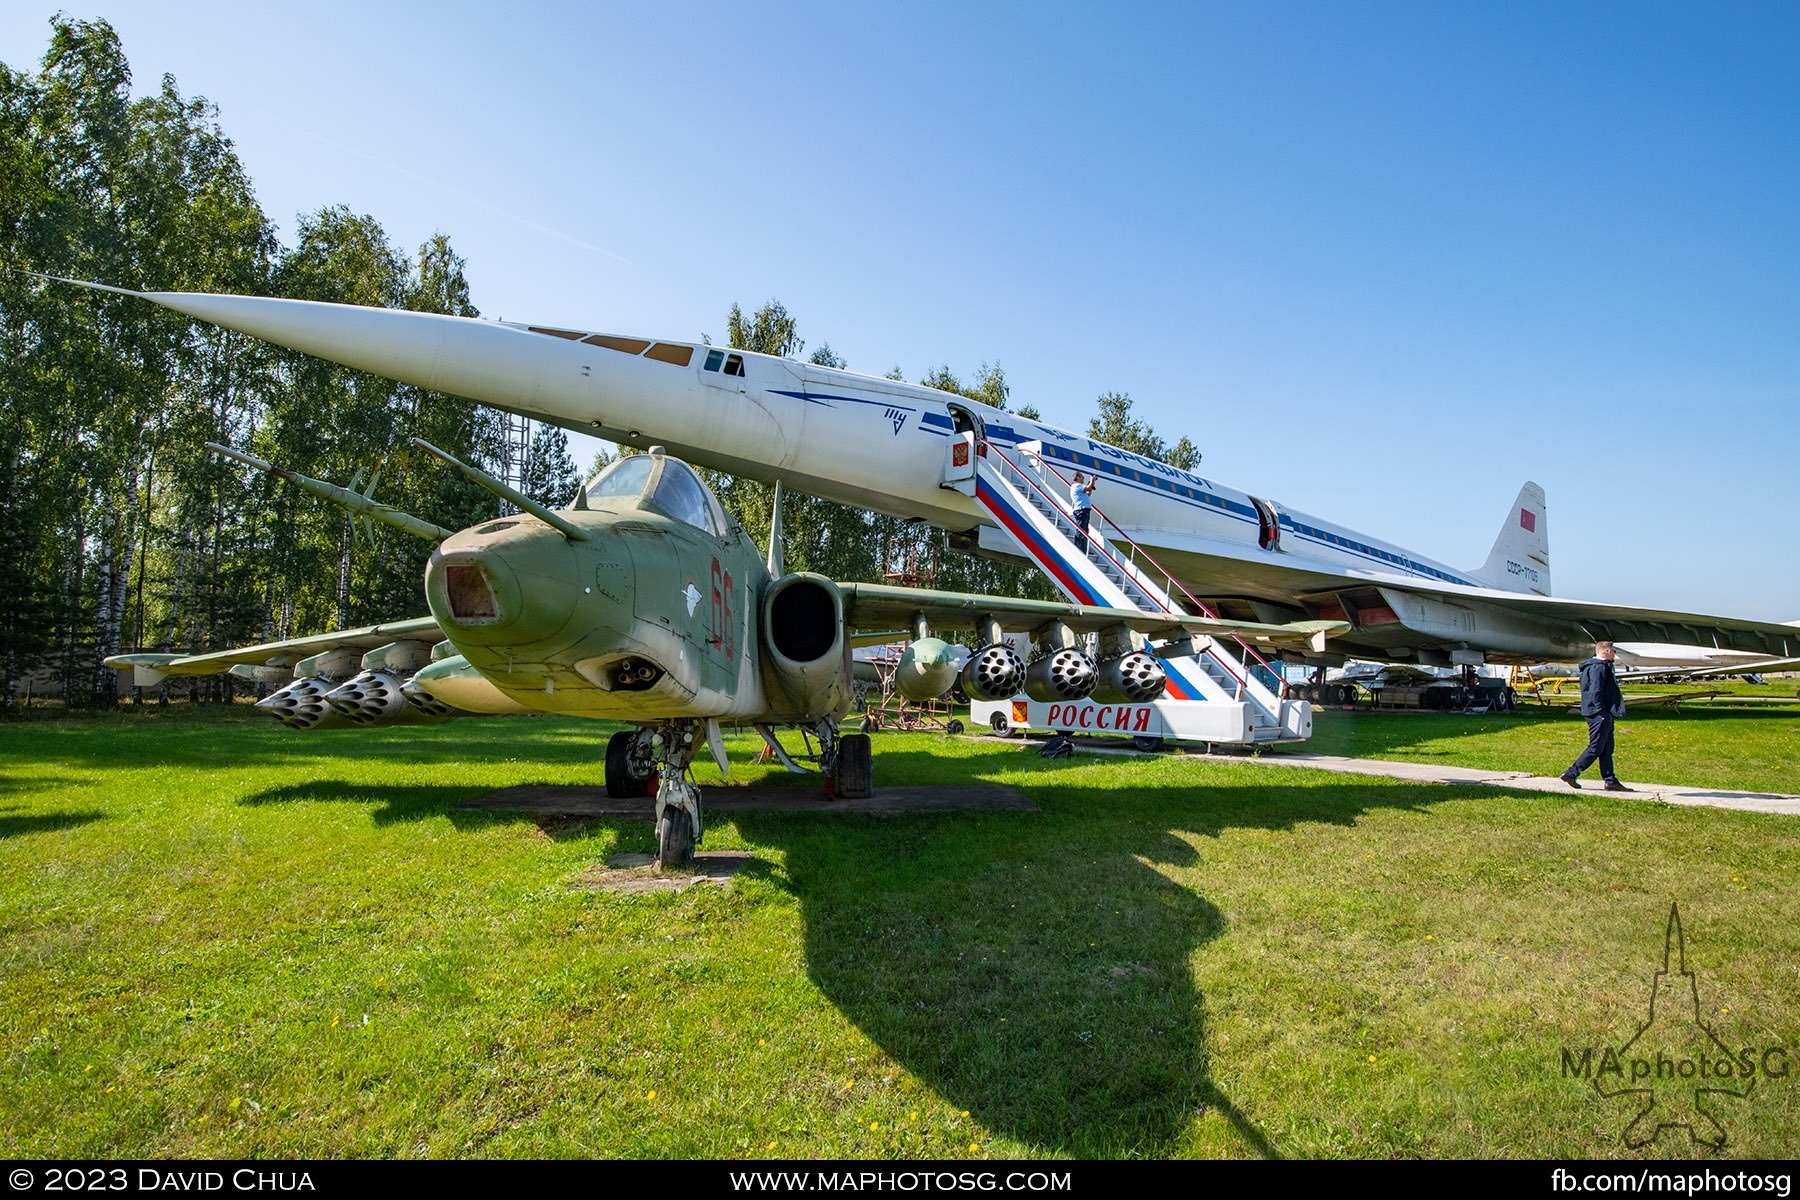 Sukhoi Su-25 and Tupolev Tu-144